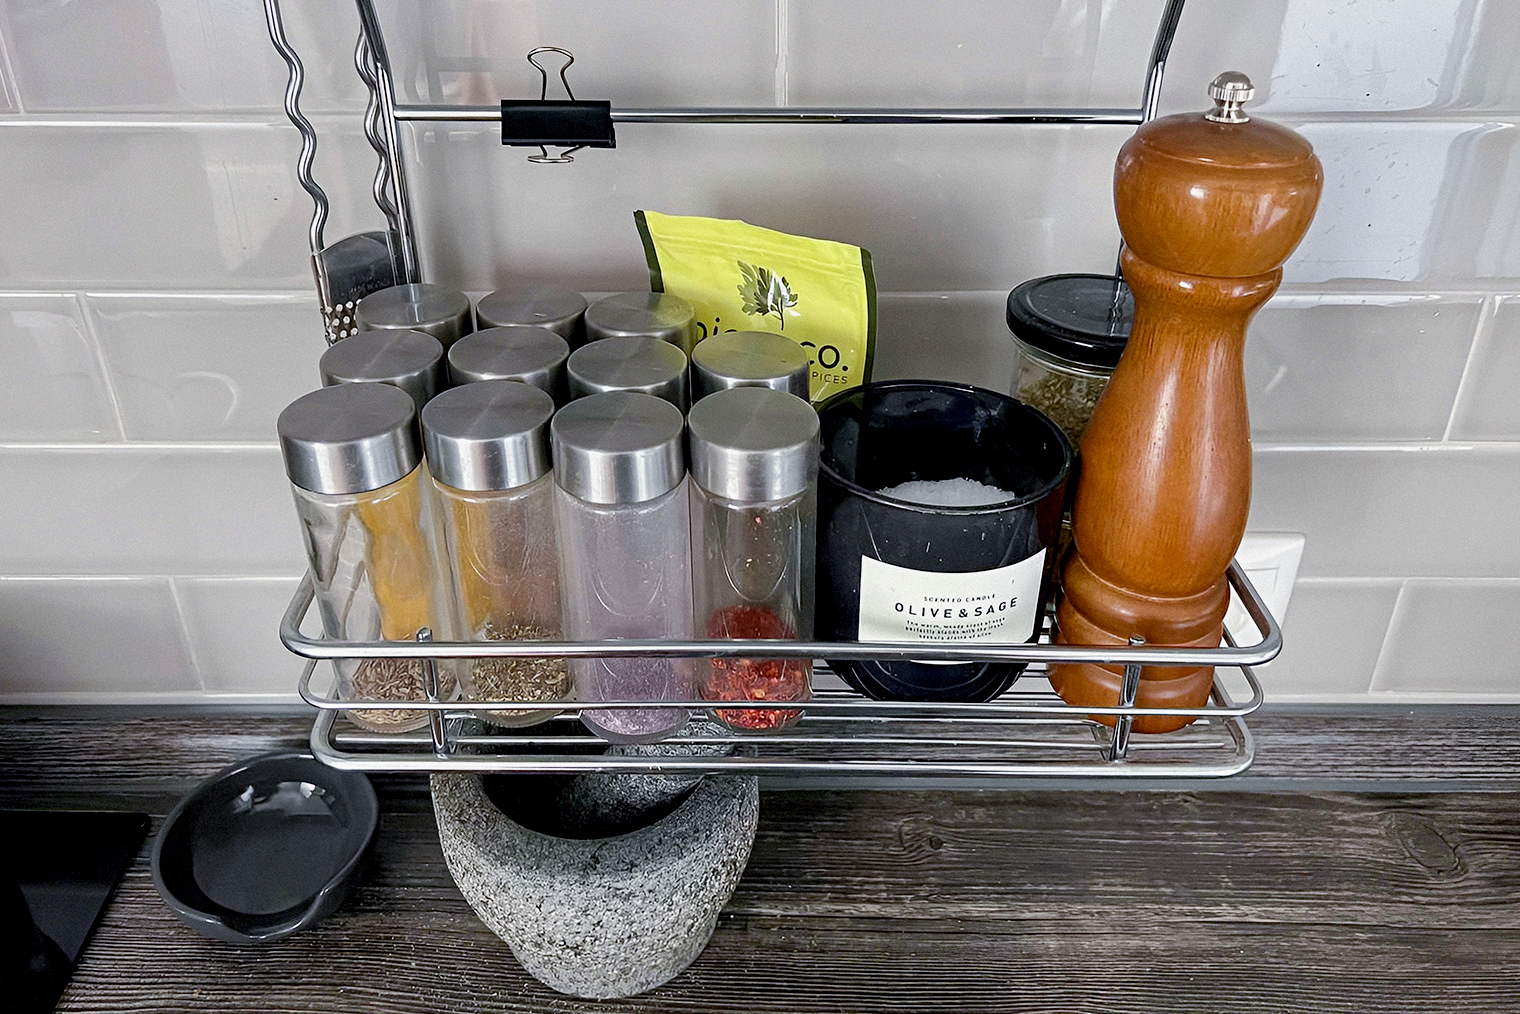 Полочку с часто используемыми специями, солью и мельницей для перца повесила на рейл над рабочей поверхностью кухни